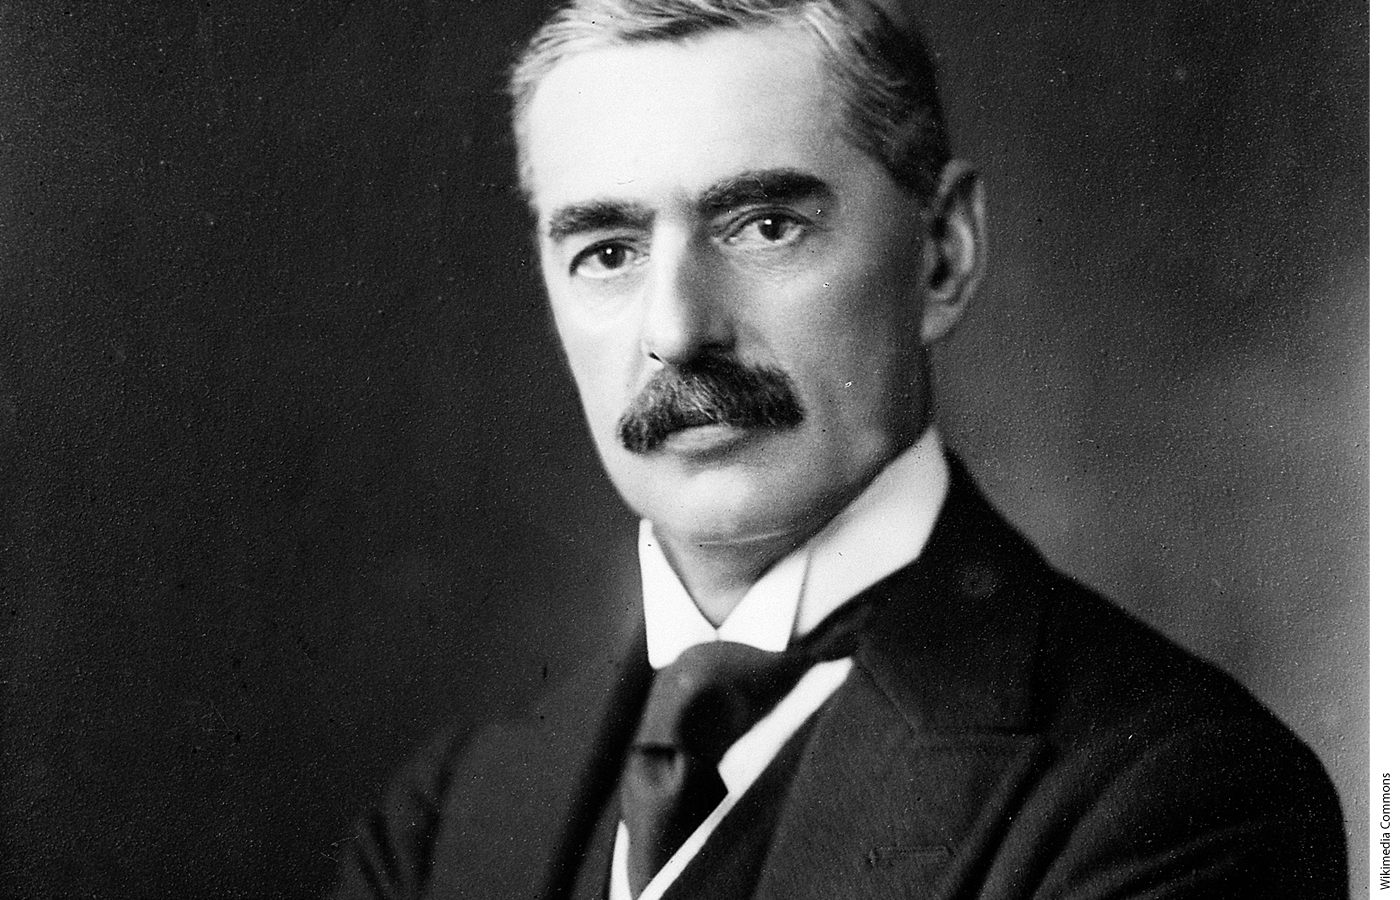 Photo of Neville Chamberlain